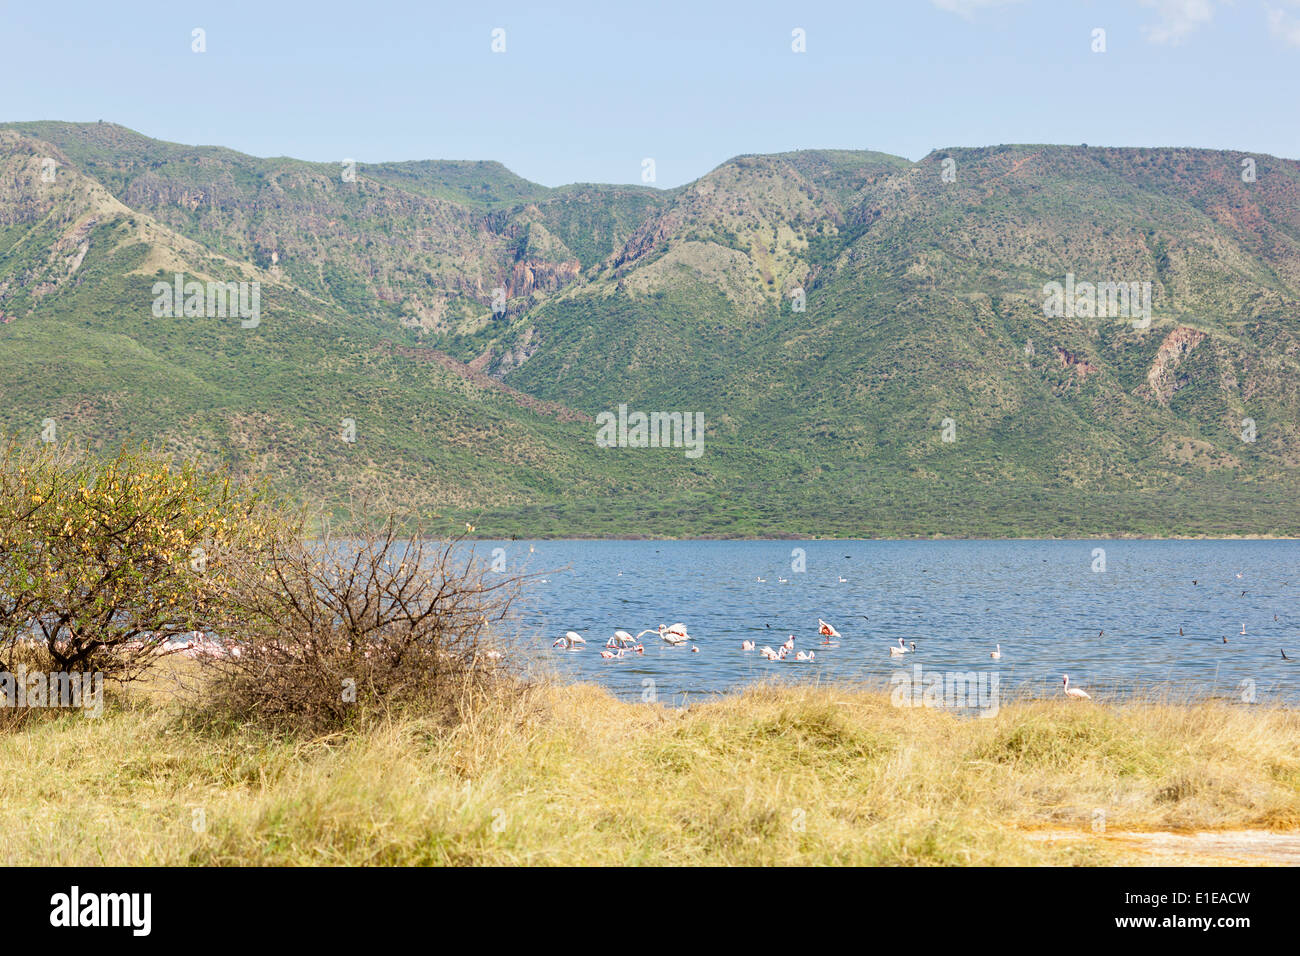 Flamingos and beautiful landscape at Lake Bogoria in Kenya. Stock Photo